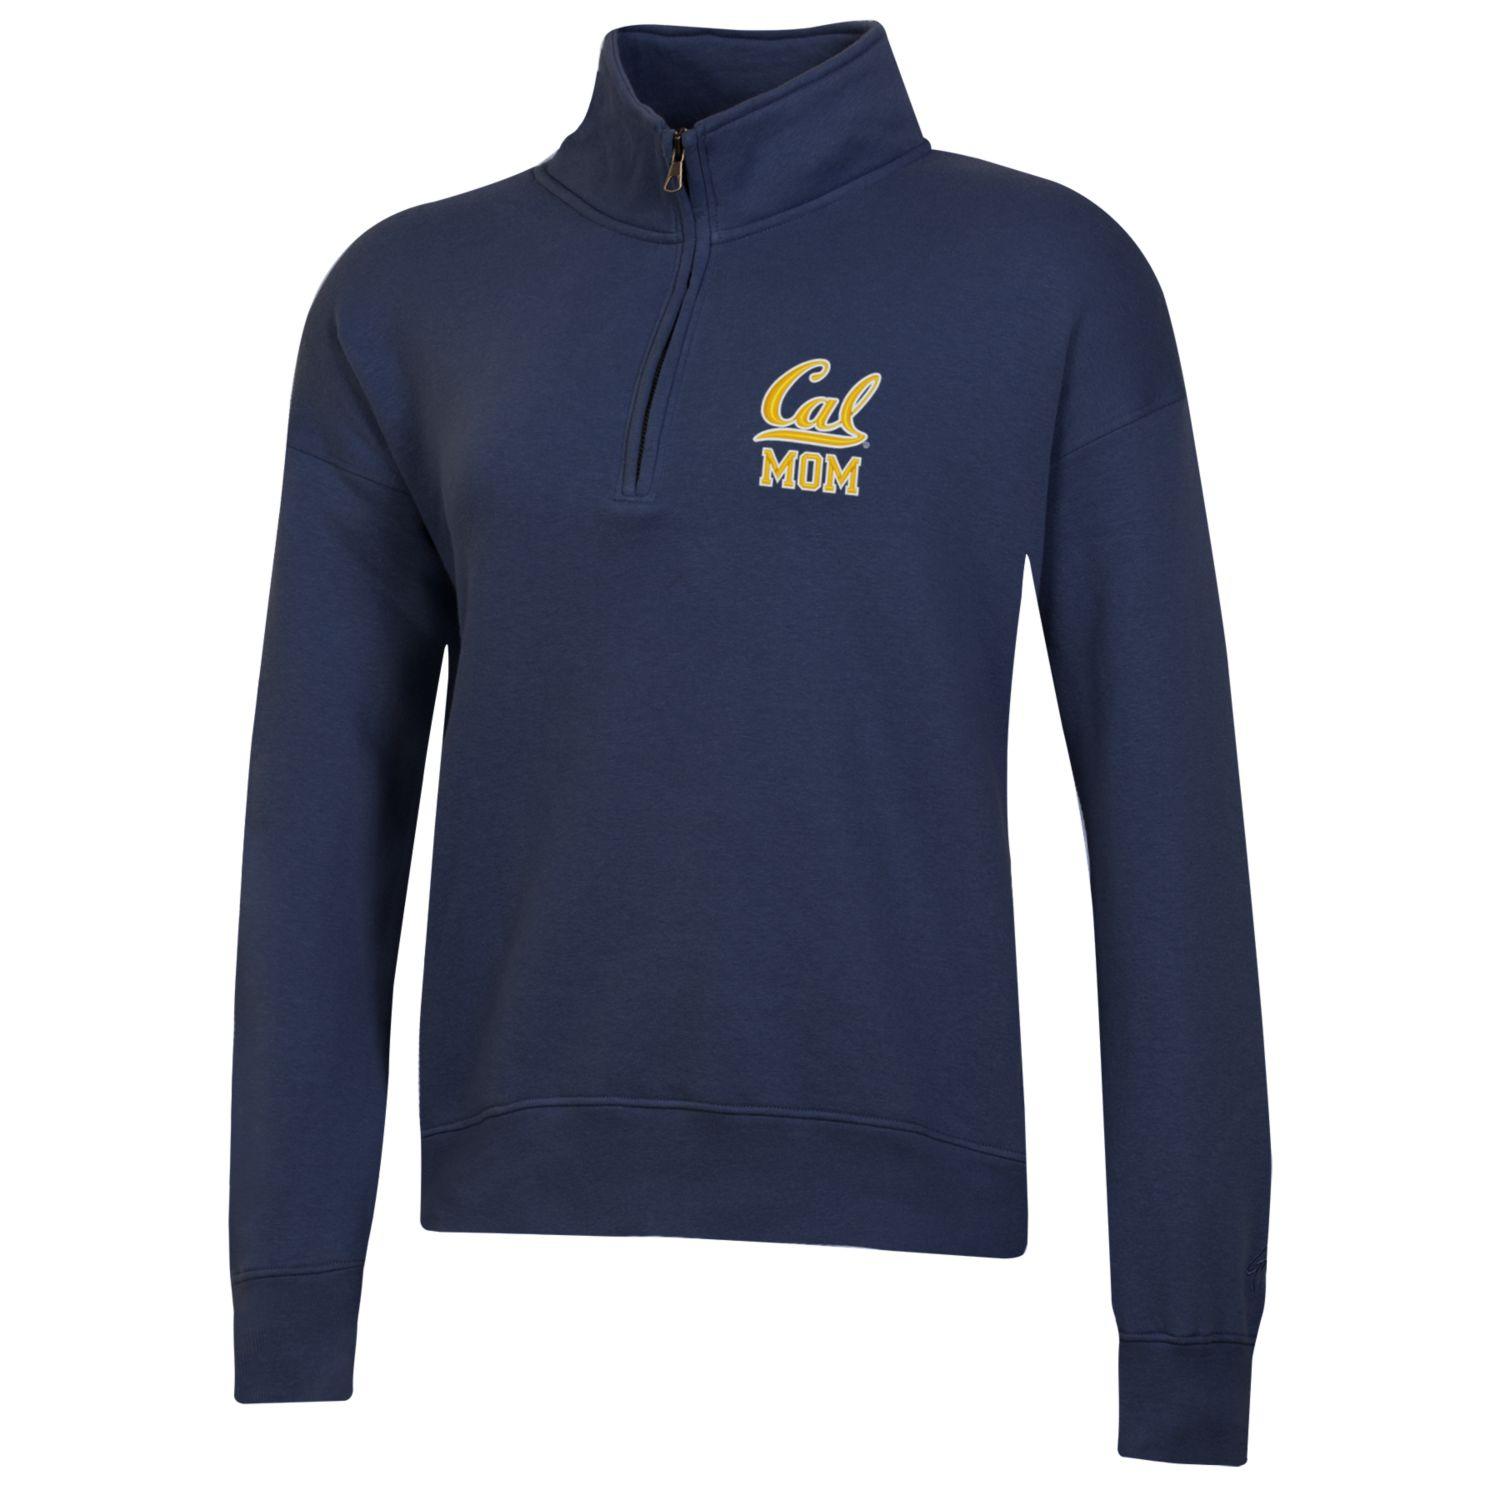 U.C. Berkeley Cal Mom embroidered Big Cotton women's 1/4 Zip sweatshirt-Navy-Shop College Wear